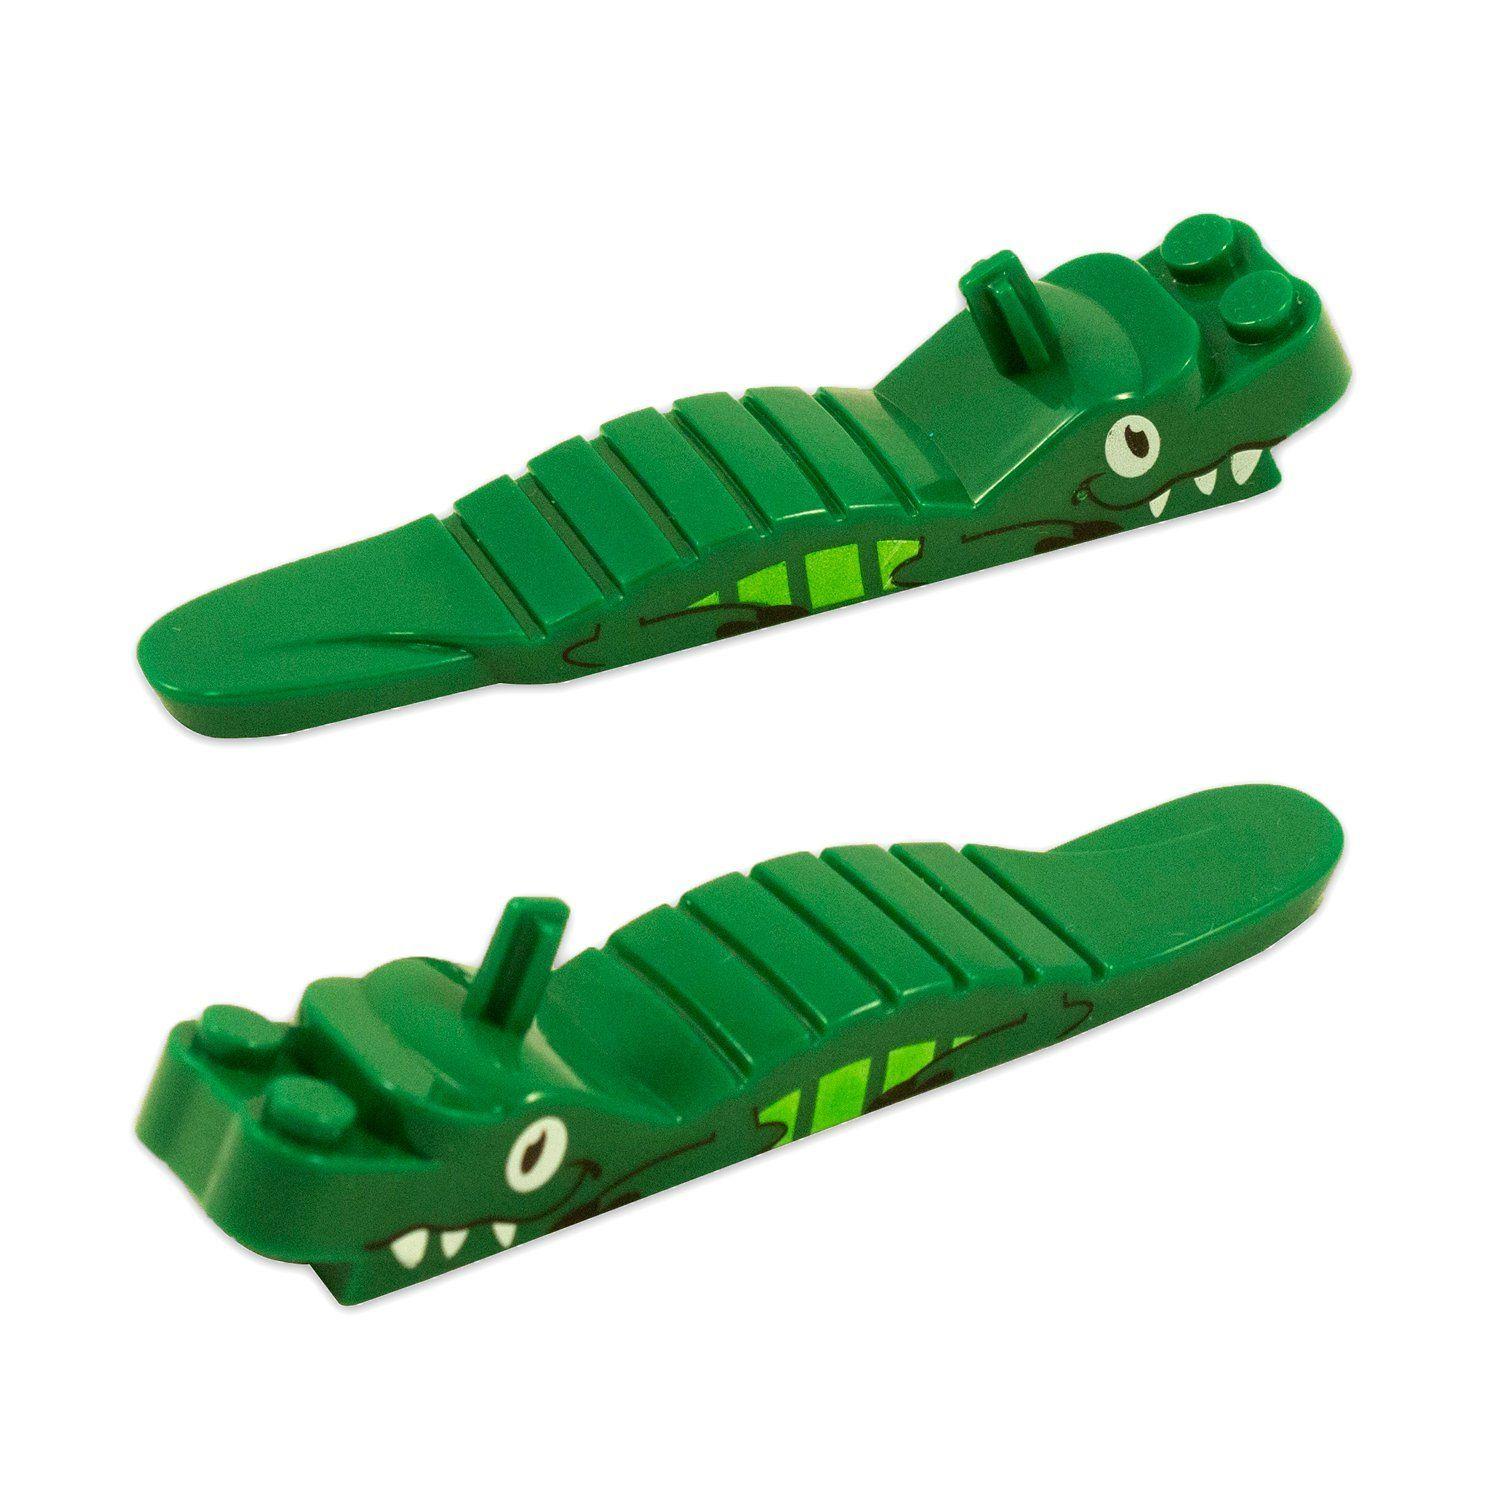 Green Alligator Logo - Cheap Green Alligator Logo, find Green Alligator Logo deals on line ...